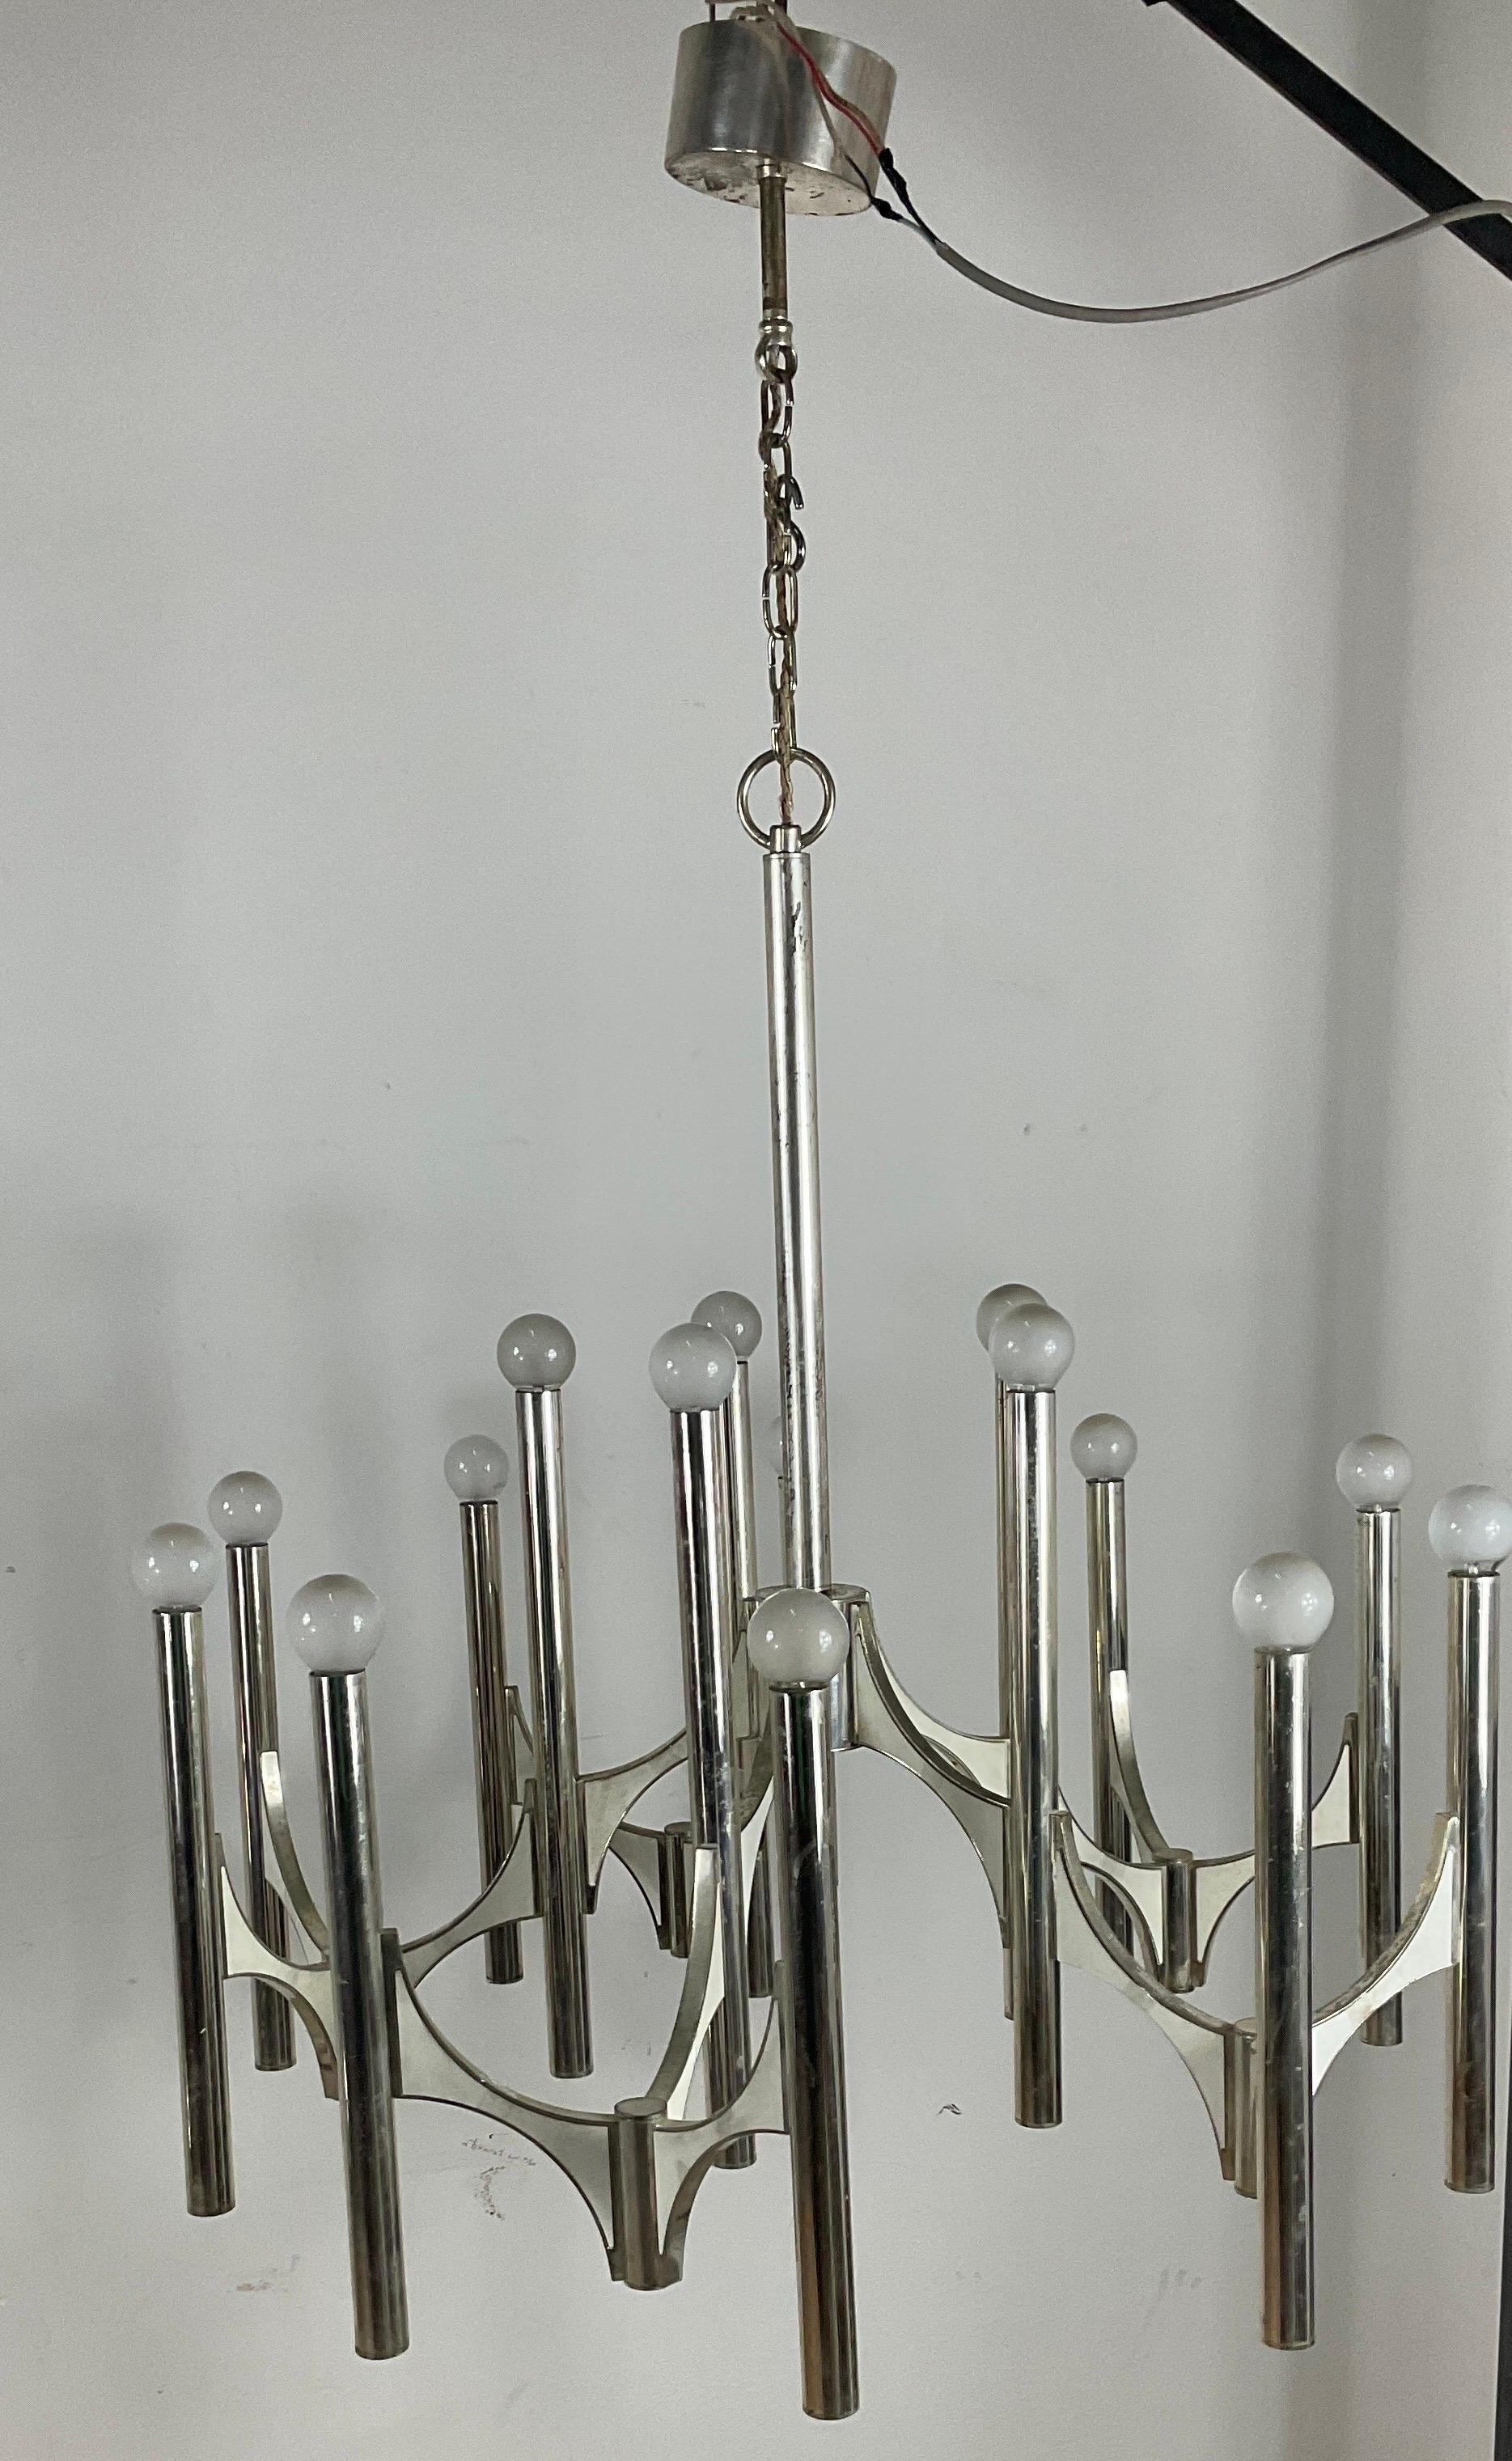 Un lustre moderniste du
• Années 60, conçu par Gaetano Sciolari pour Lightoiler, Italie. Fabriqué en laiton argenté. Le lustre comporte 5 bras et offre quinze sources lumineuses. Une combinaison étonnante de tubes verticaux argentés et de panneaux